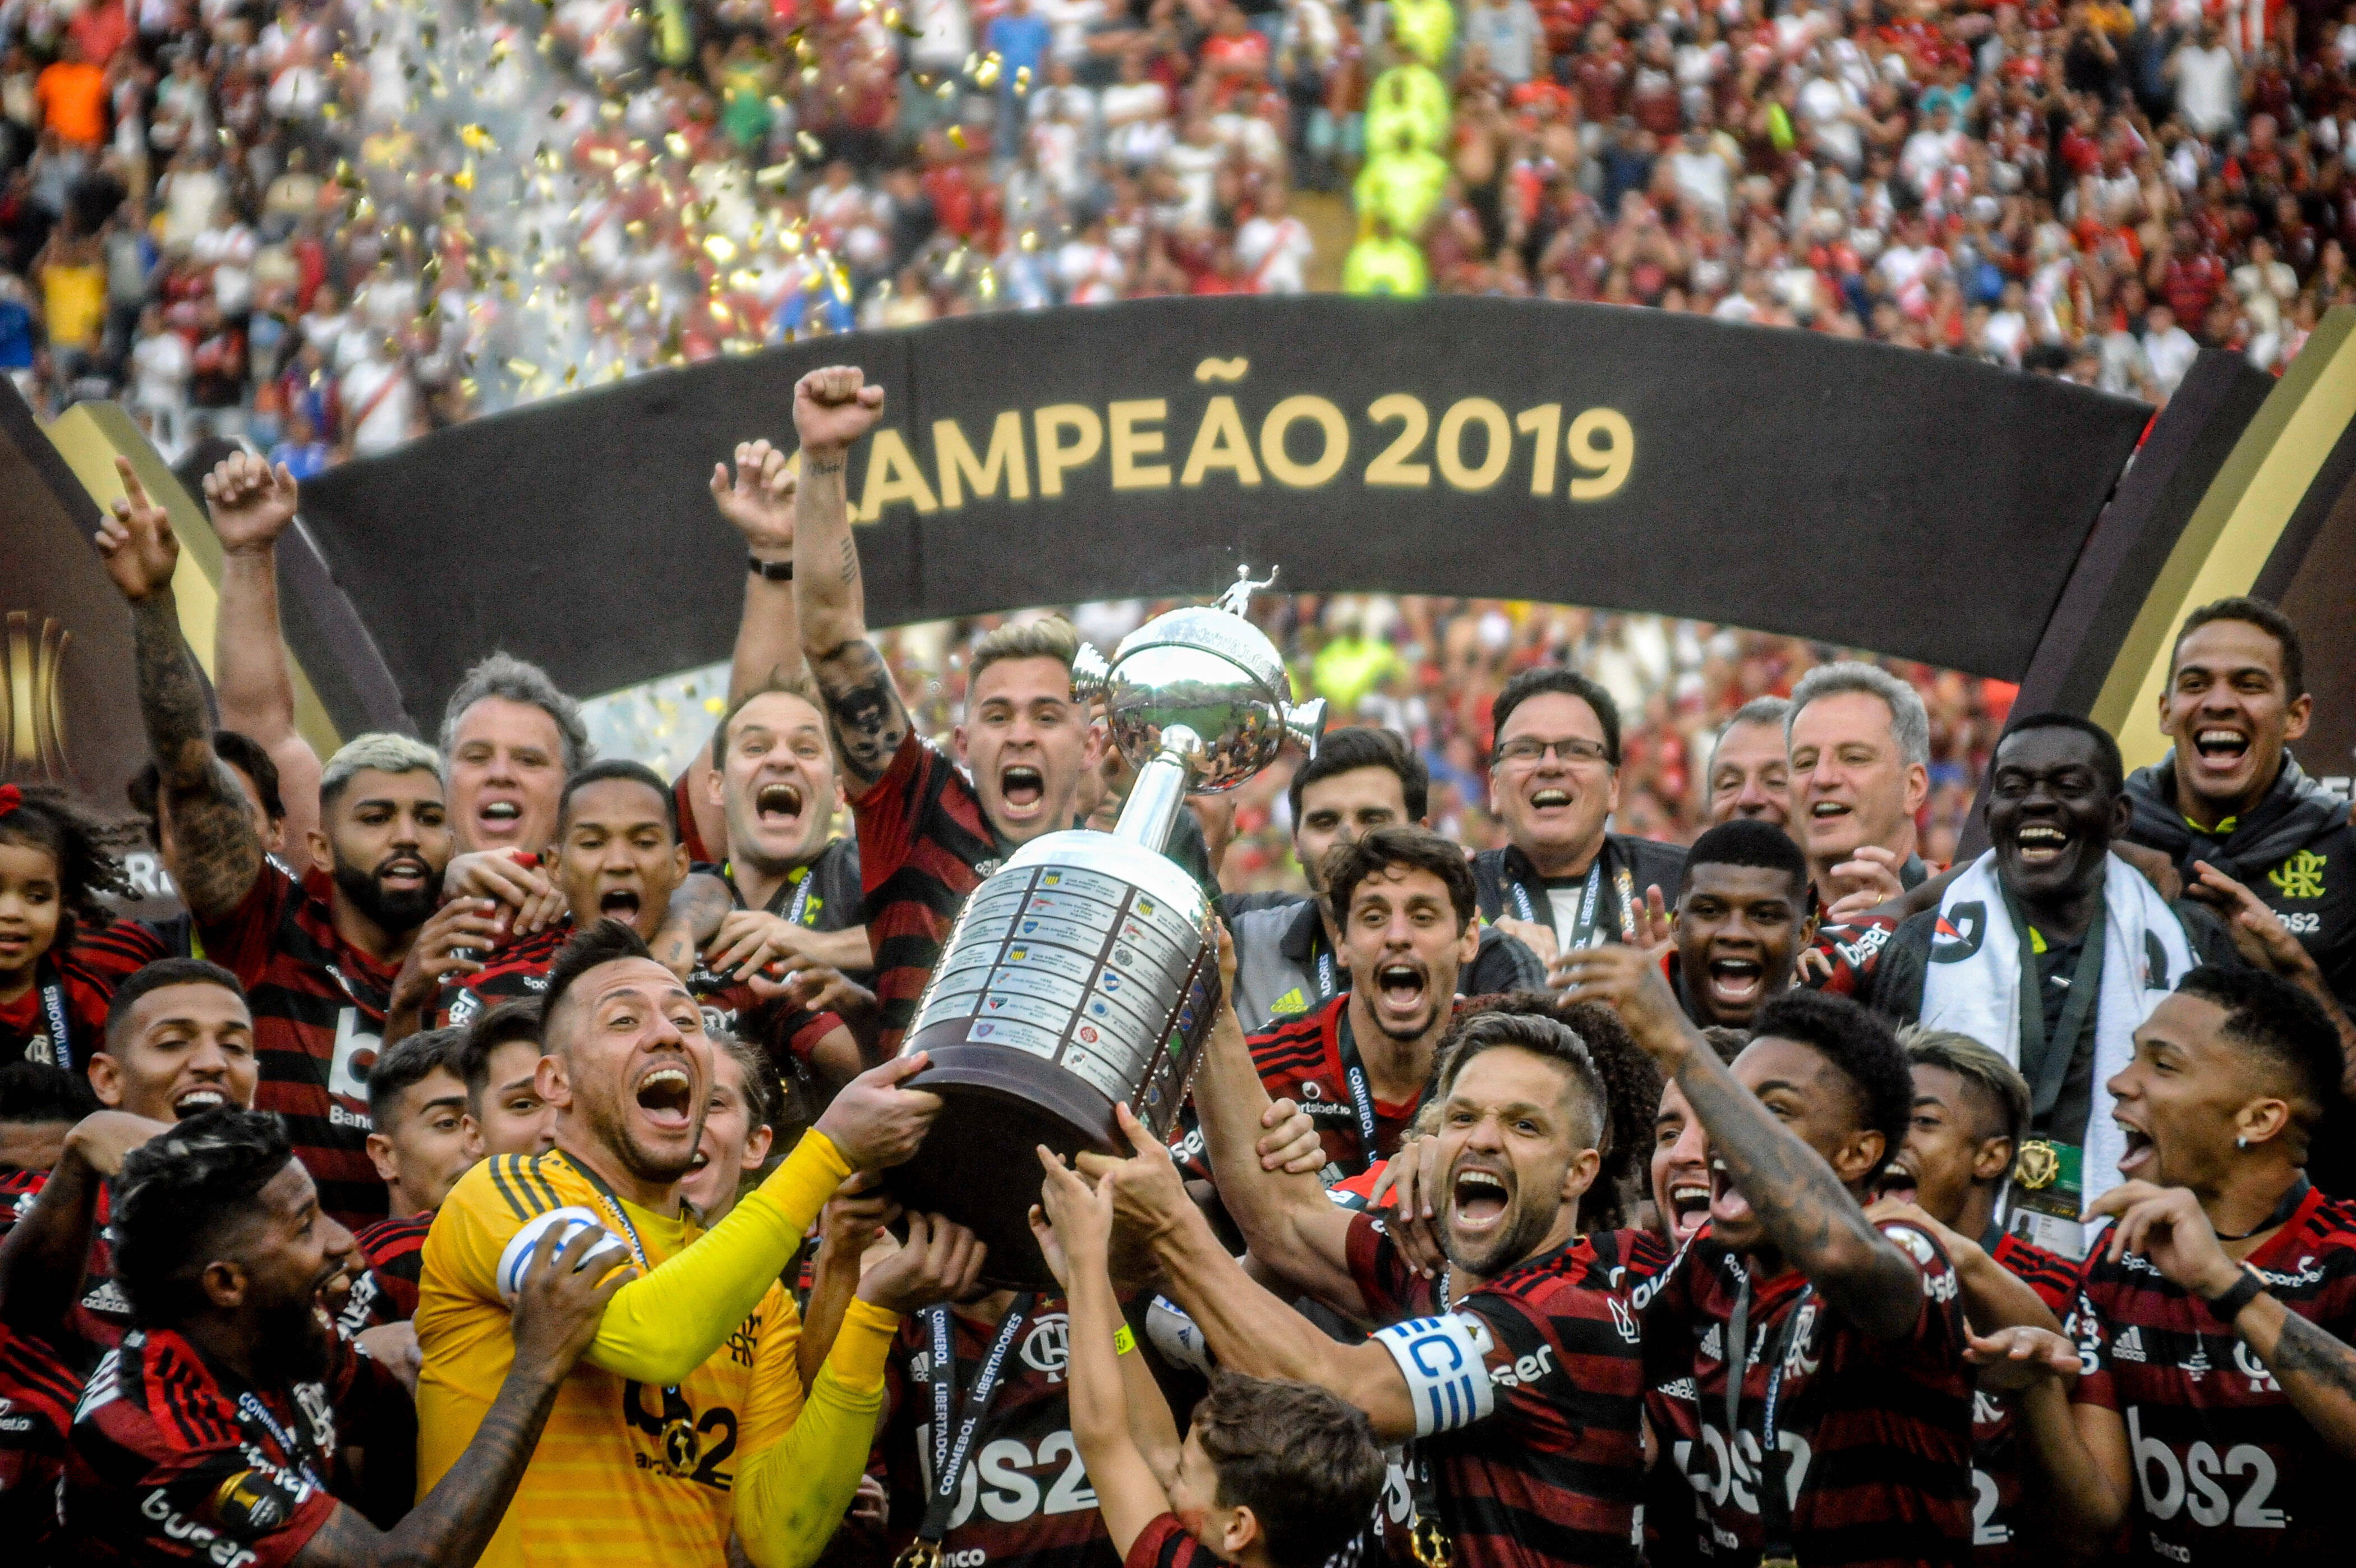 Jogadores do Flamengo levantam a taça de campeão da Libertadores 2019. Foto: Nayra Halm/Fotoarena/Agência O Globo